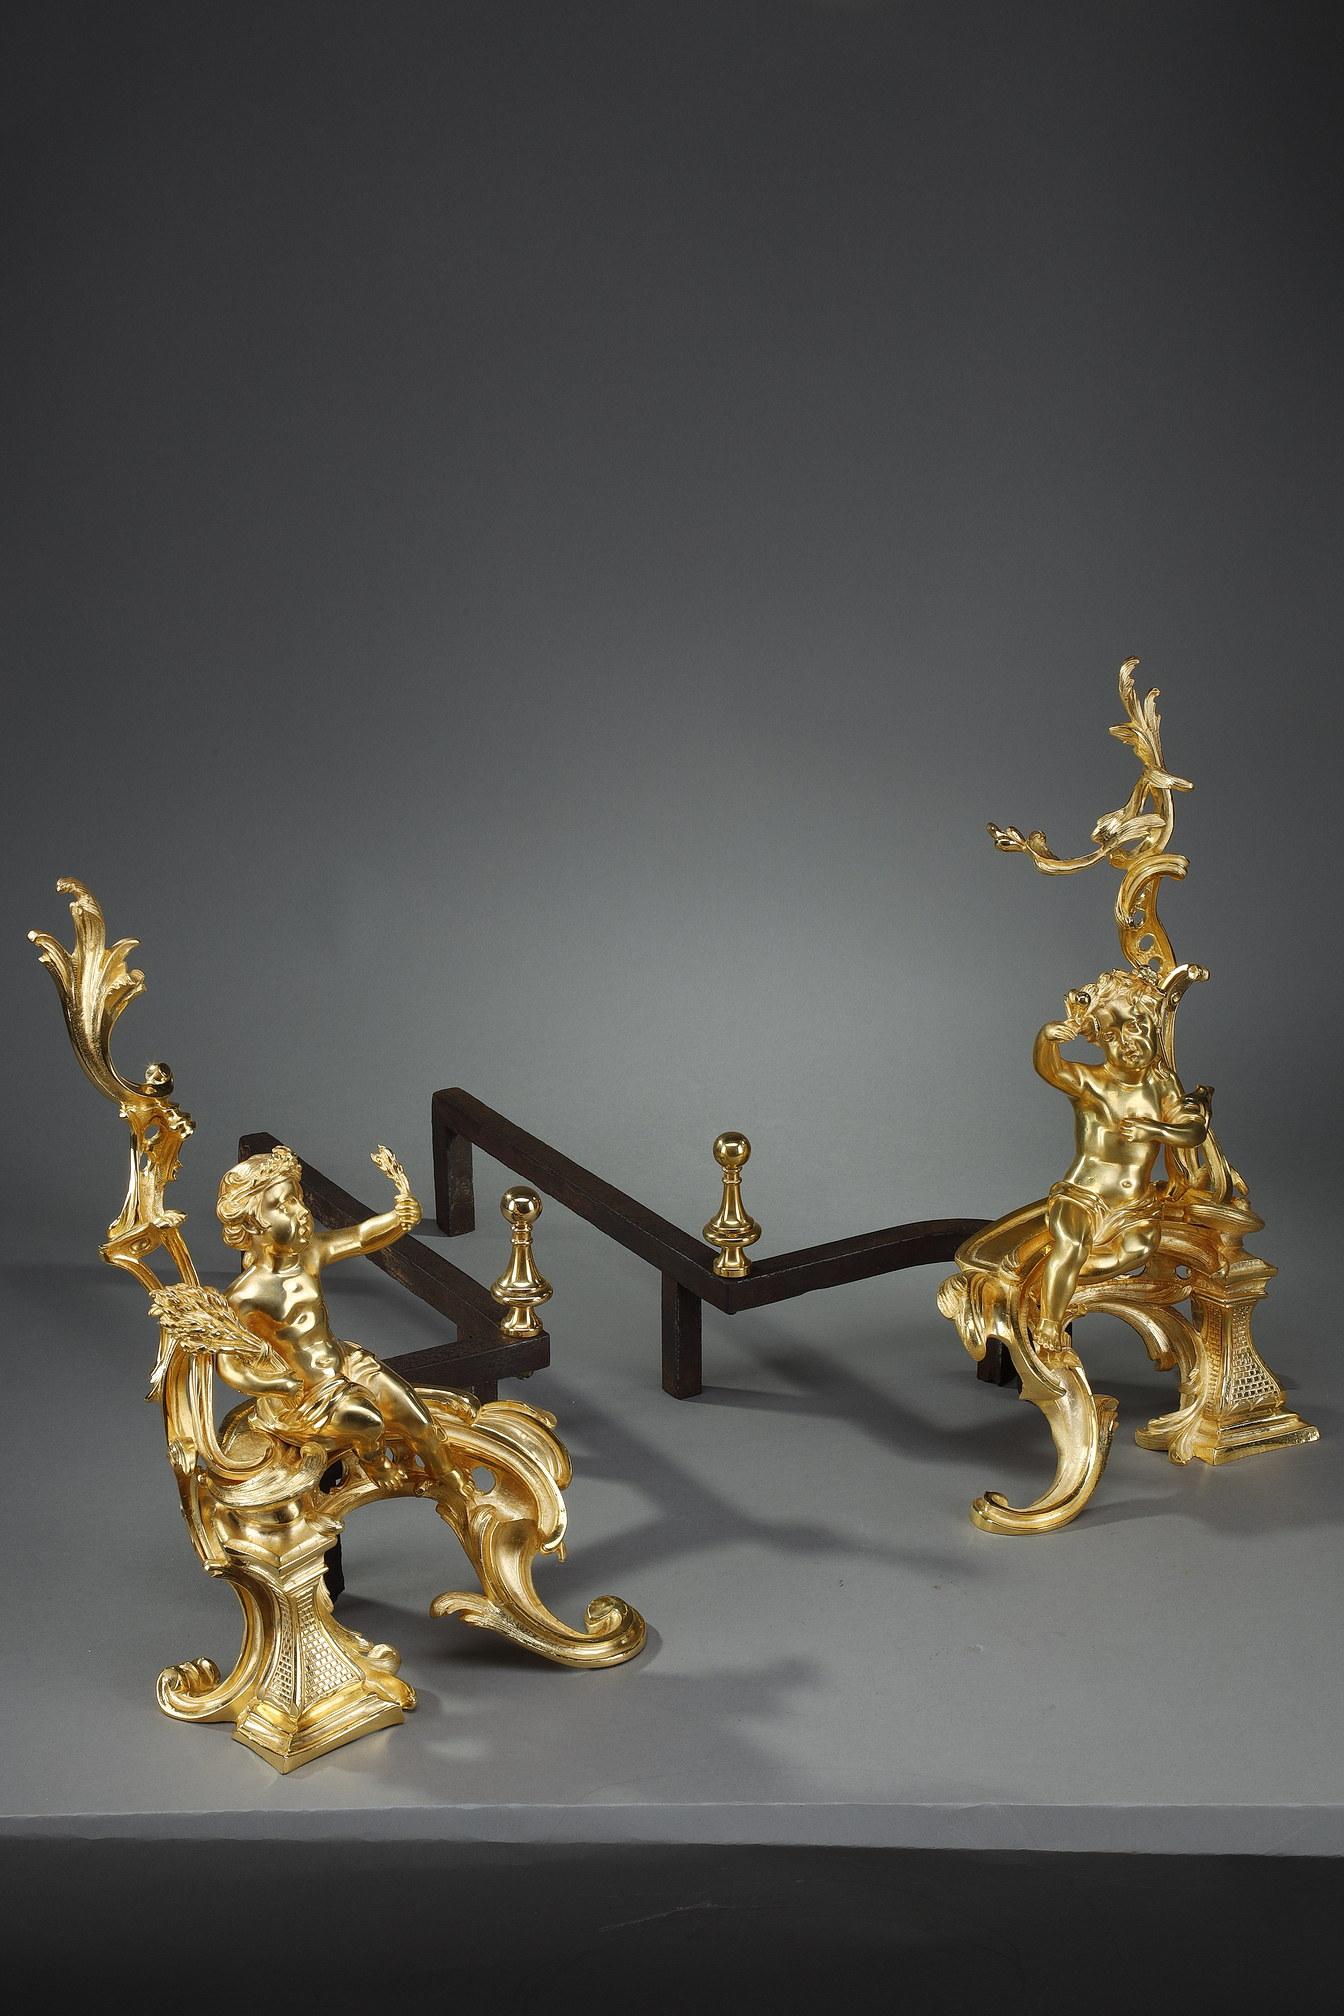 Paire de chenets de style Louis XV à décor rocaille. Ils sont décorés de putti en bronze doré et ciselé, assis sur une base mobile. Un putto portant une couronne de blé tient une gerbe de blé, tandis que l'autre tenant son drapé tient des fleurs.